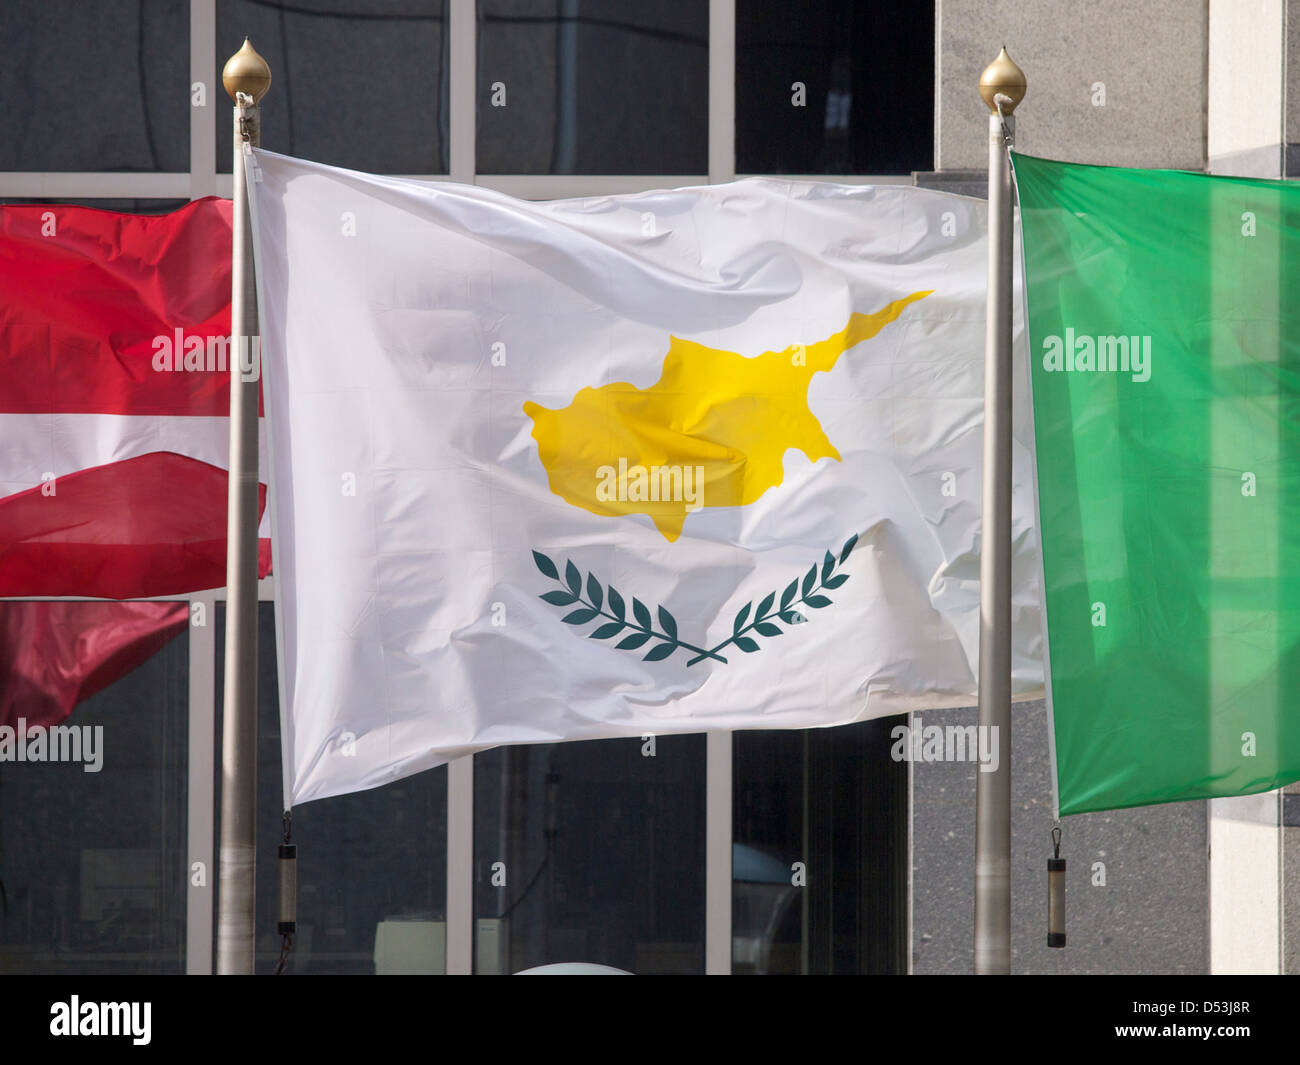 Brandissant le drapeau de Chypre en face de l'UE Parlement européen à Bruxelles. Banque D'Images